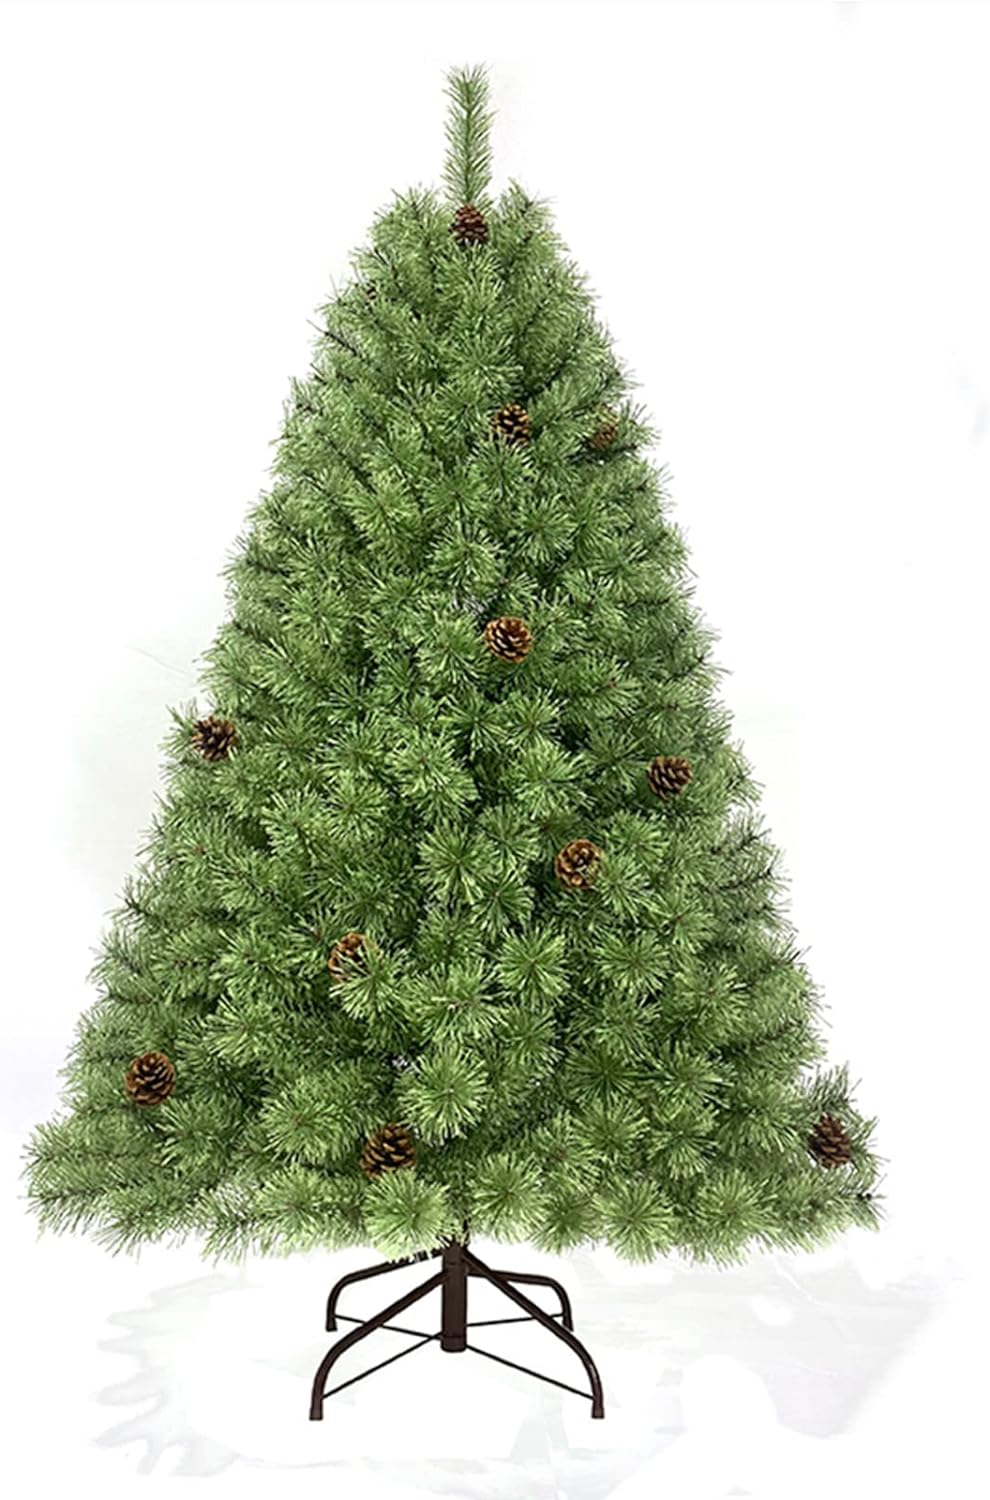 クリスマスツリー 180cm 松ぼっくり付き おしゃれ 北欧 豊富な枝数 リアル 飾り 置物 プレゼント シンプル クリスマスオーナメント ボリューム感 組立簡単 Xmas tree Christmas 業務用 店舗用 家庭用 高級